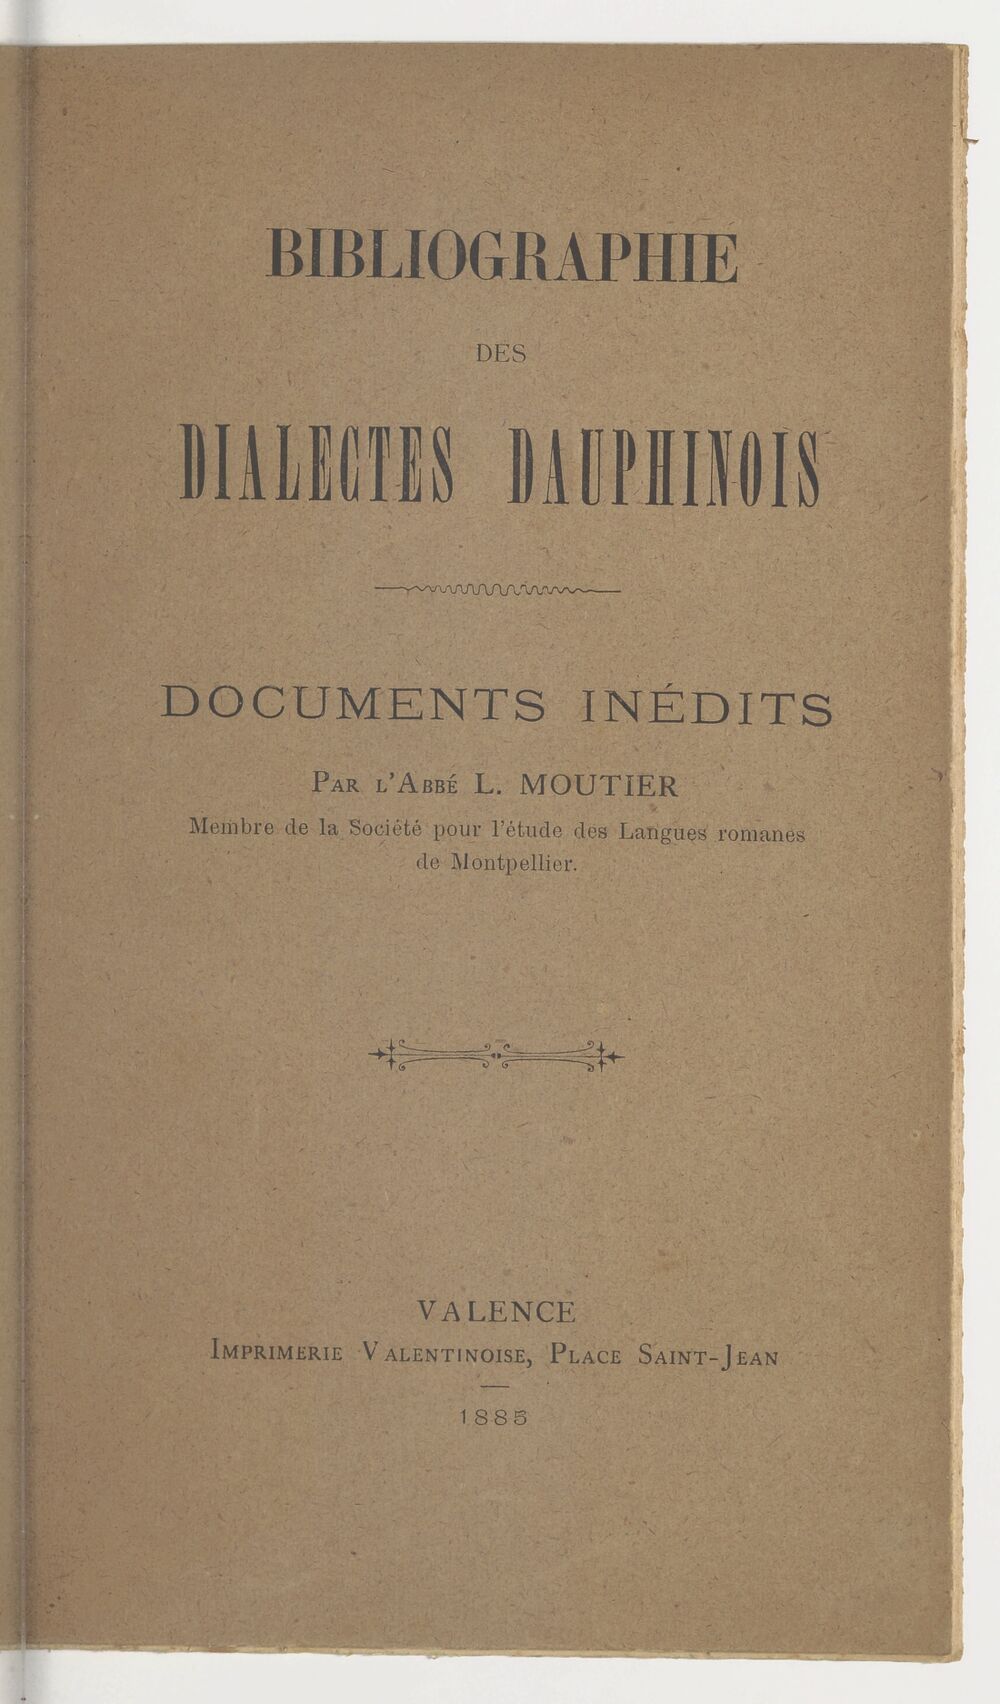 Grammaire dauphinoise. Dialecte de la vallée de la Drôme, par l'abbé L. Moutier,...